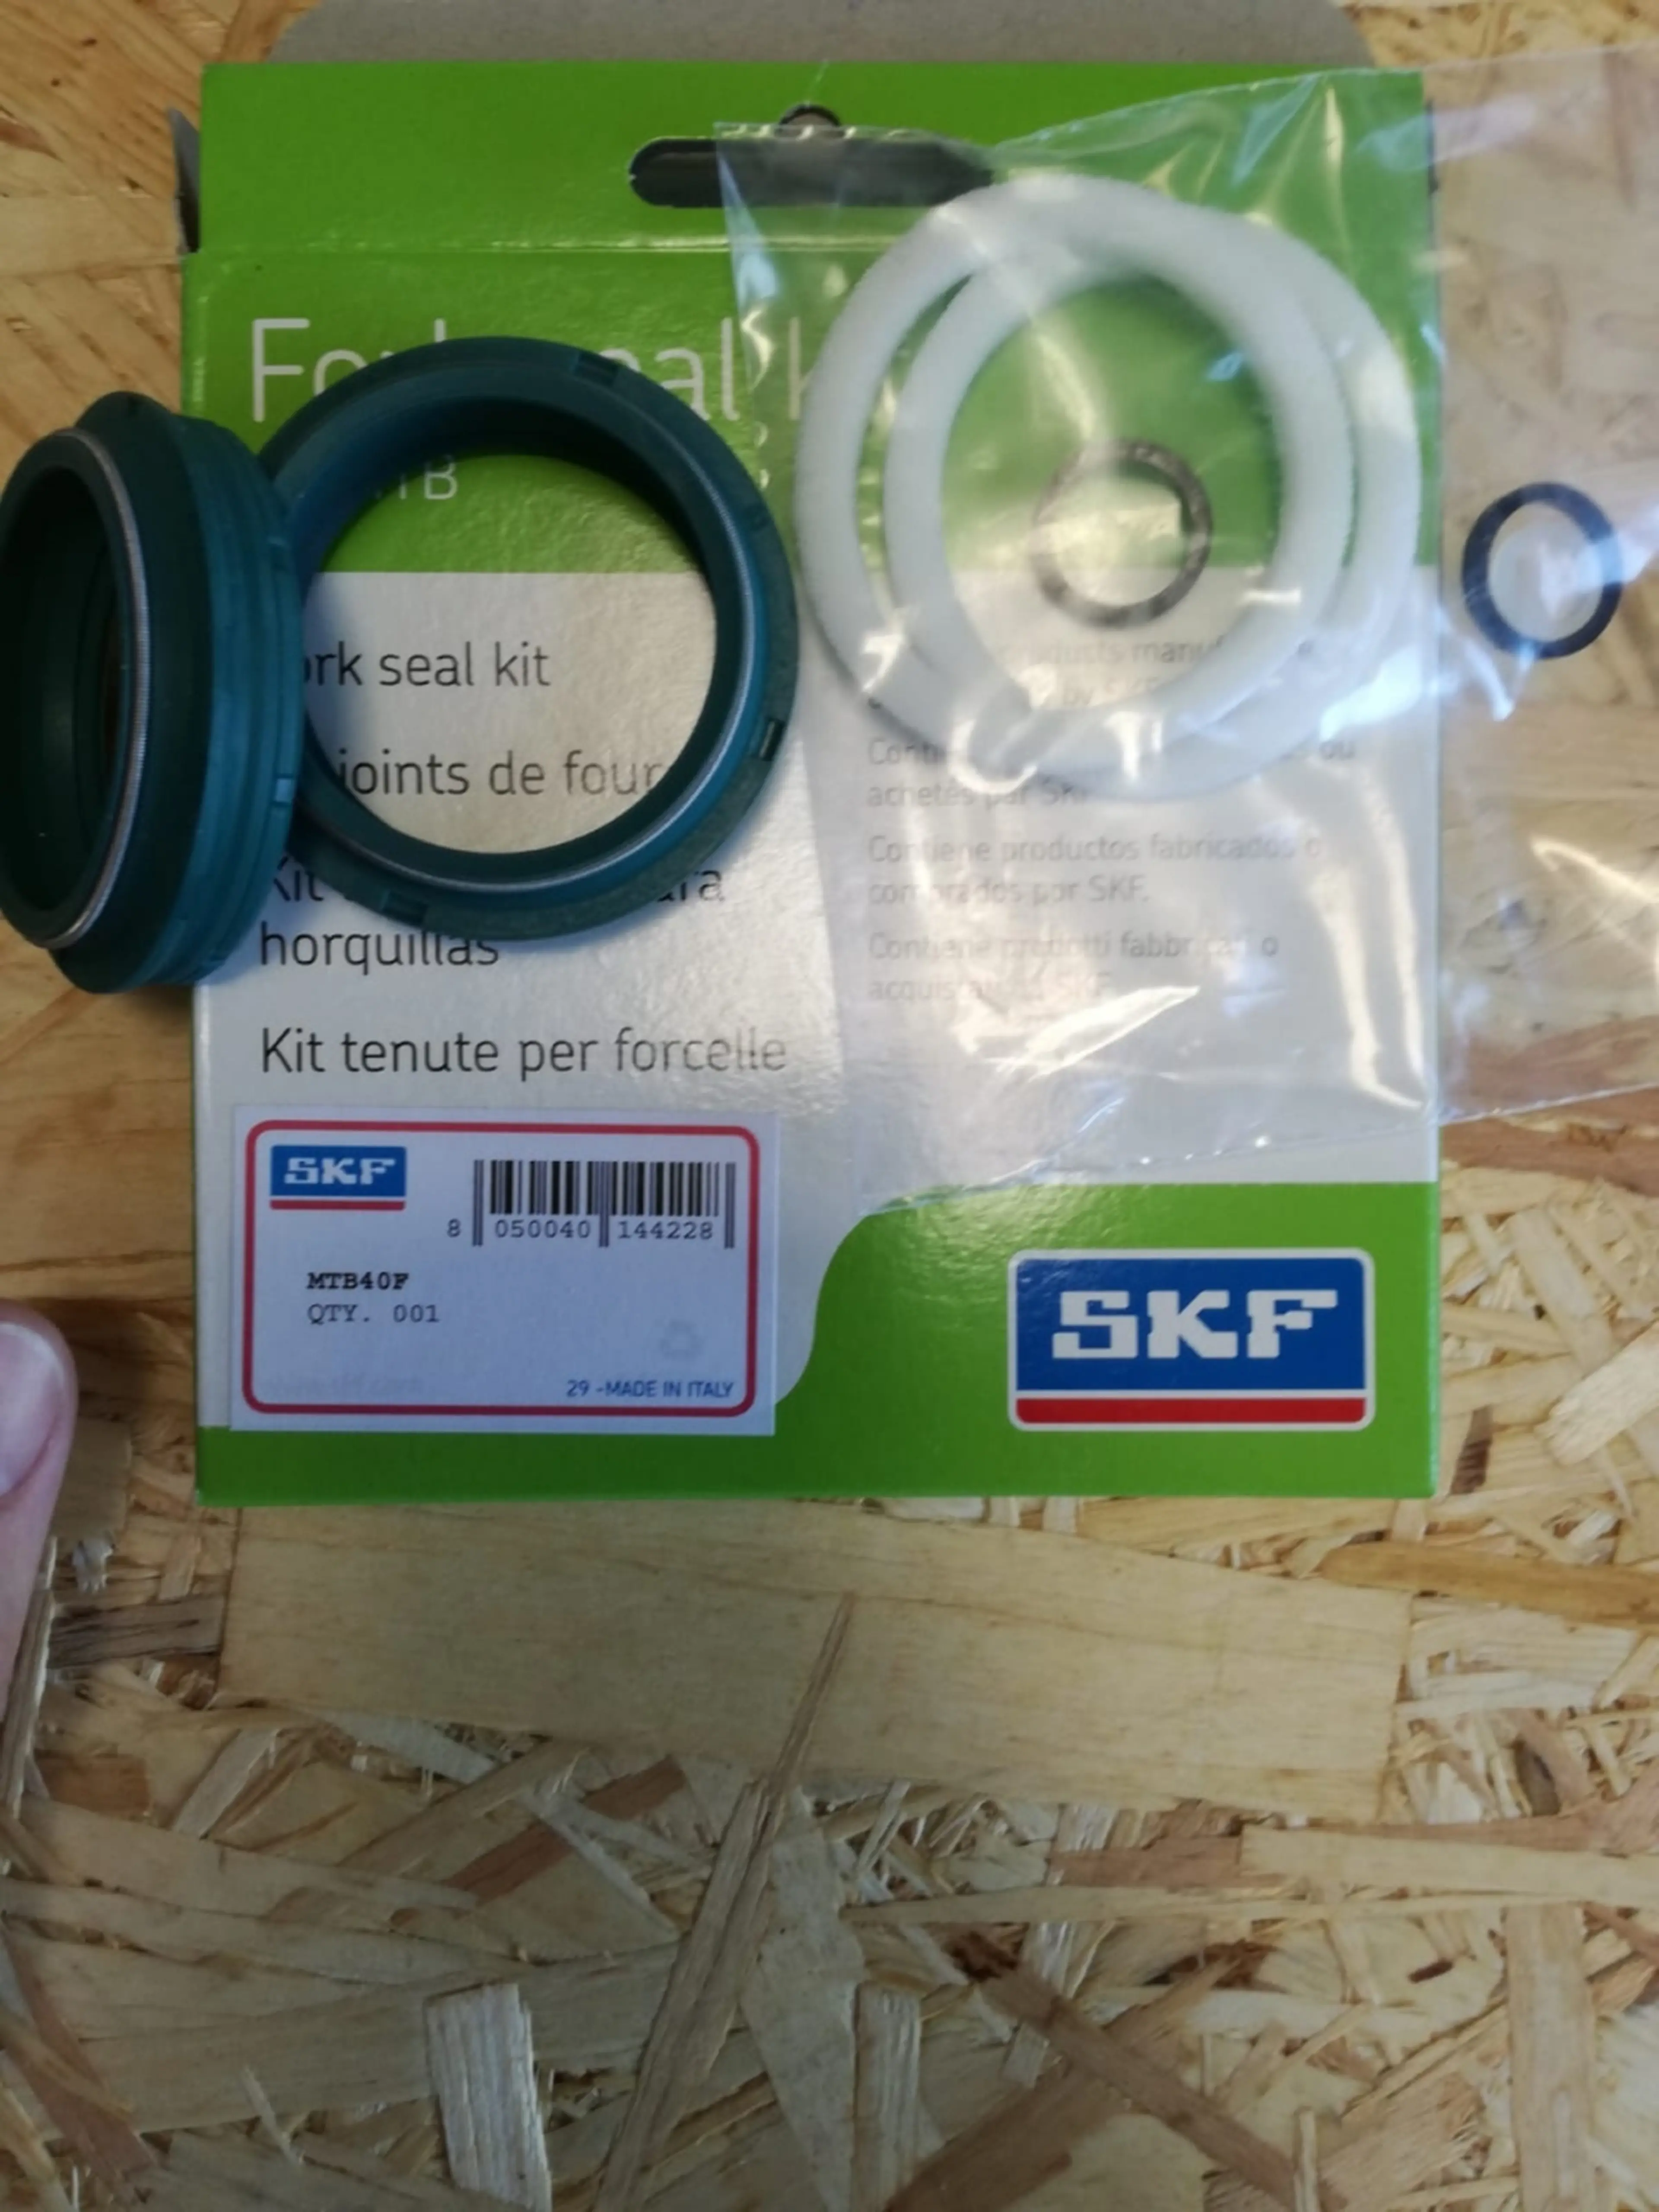 Image Kit reparatie skf furca fox MTB40F